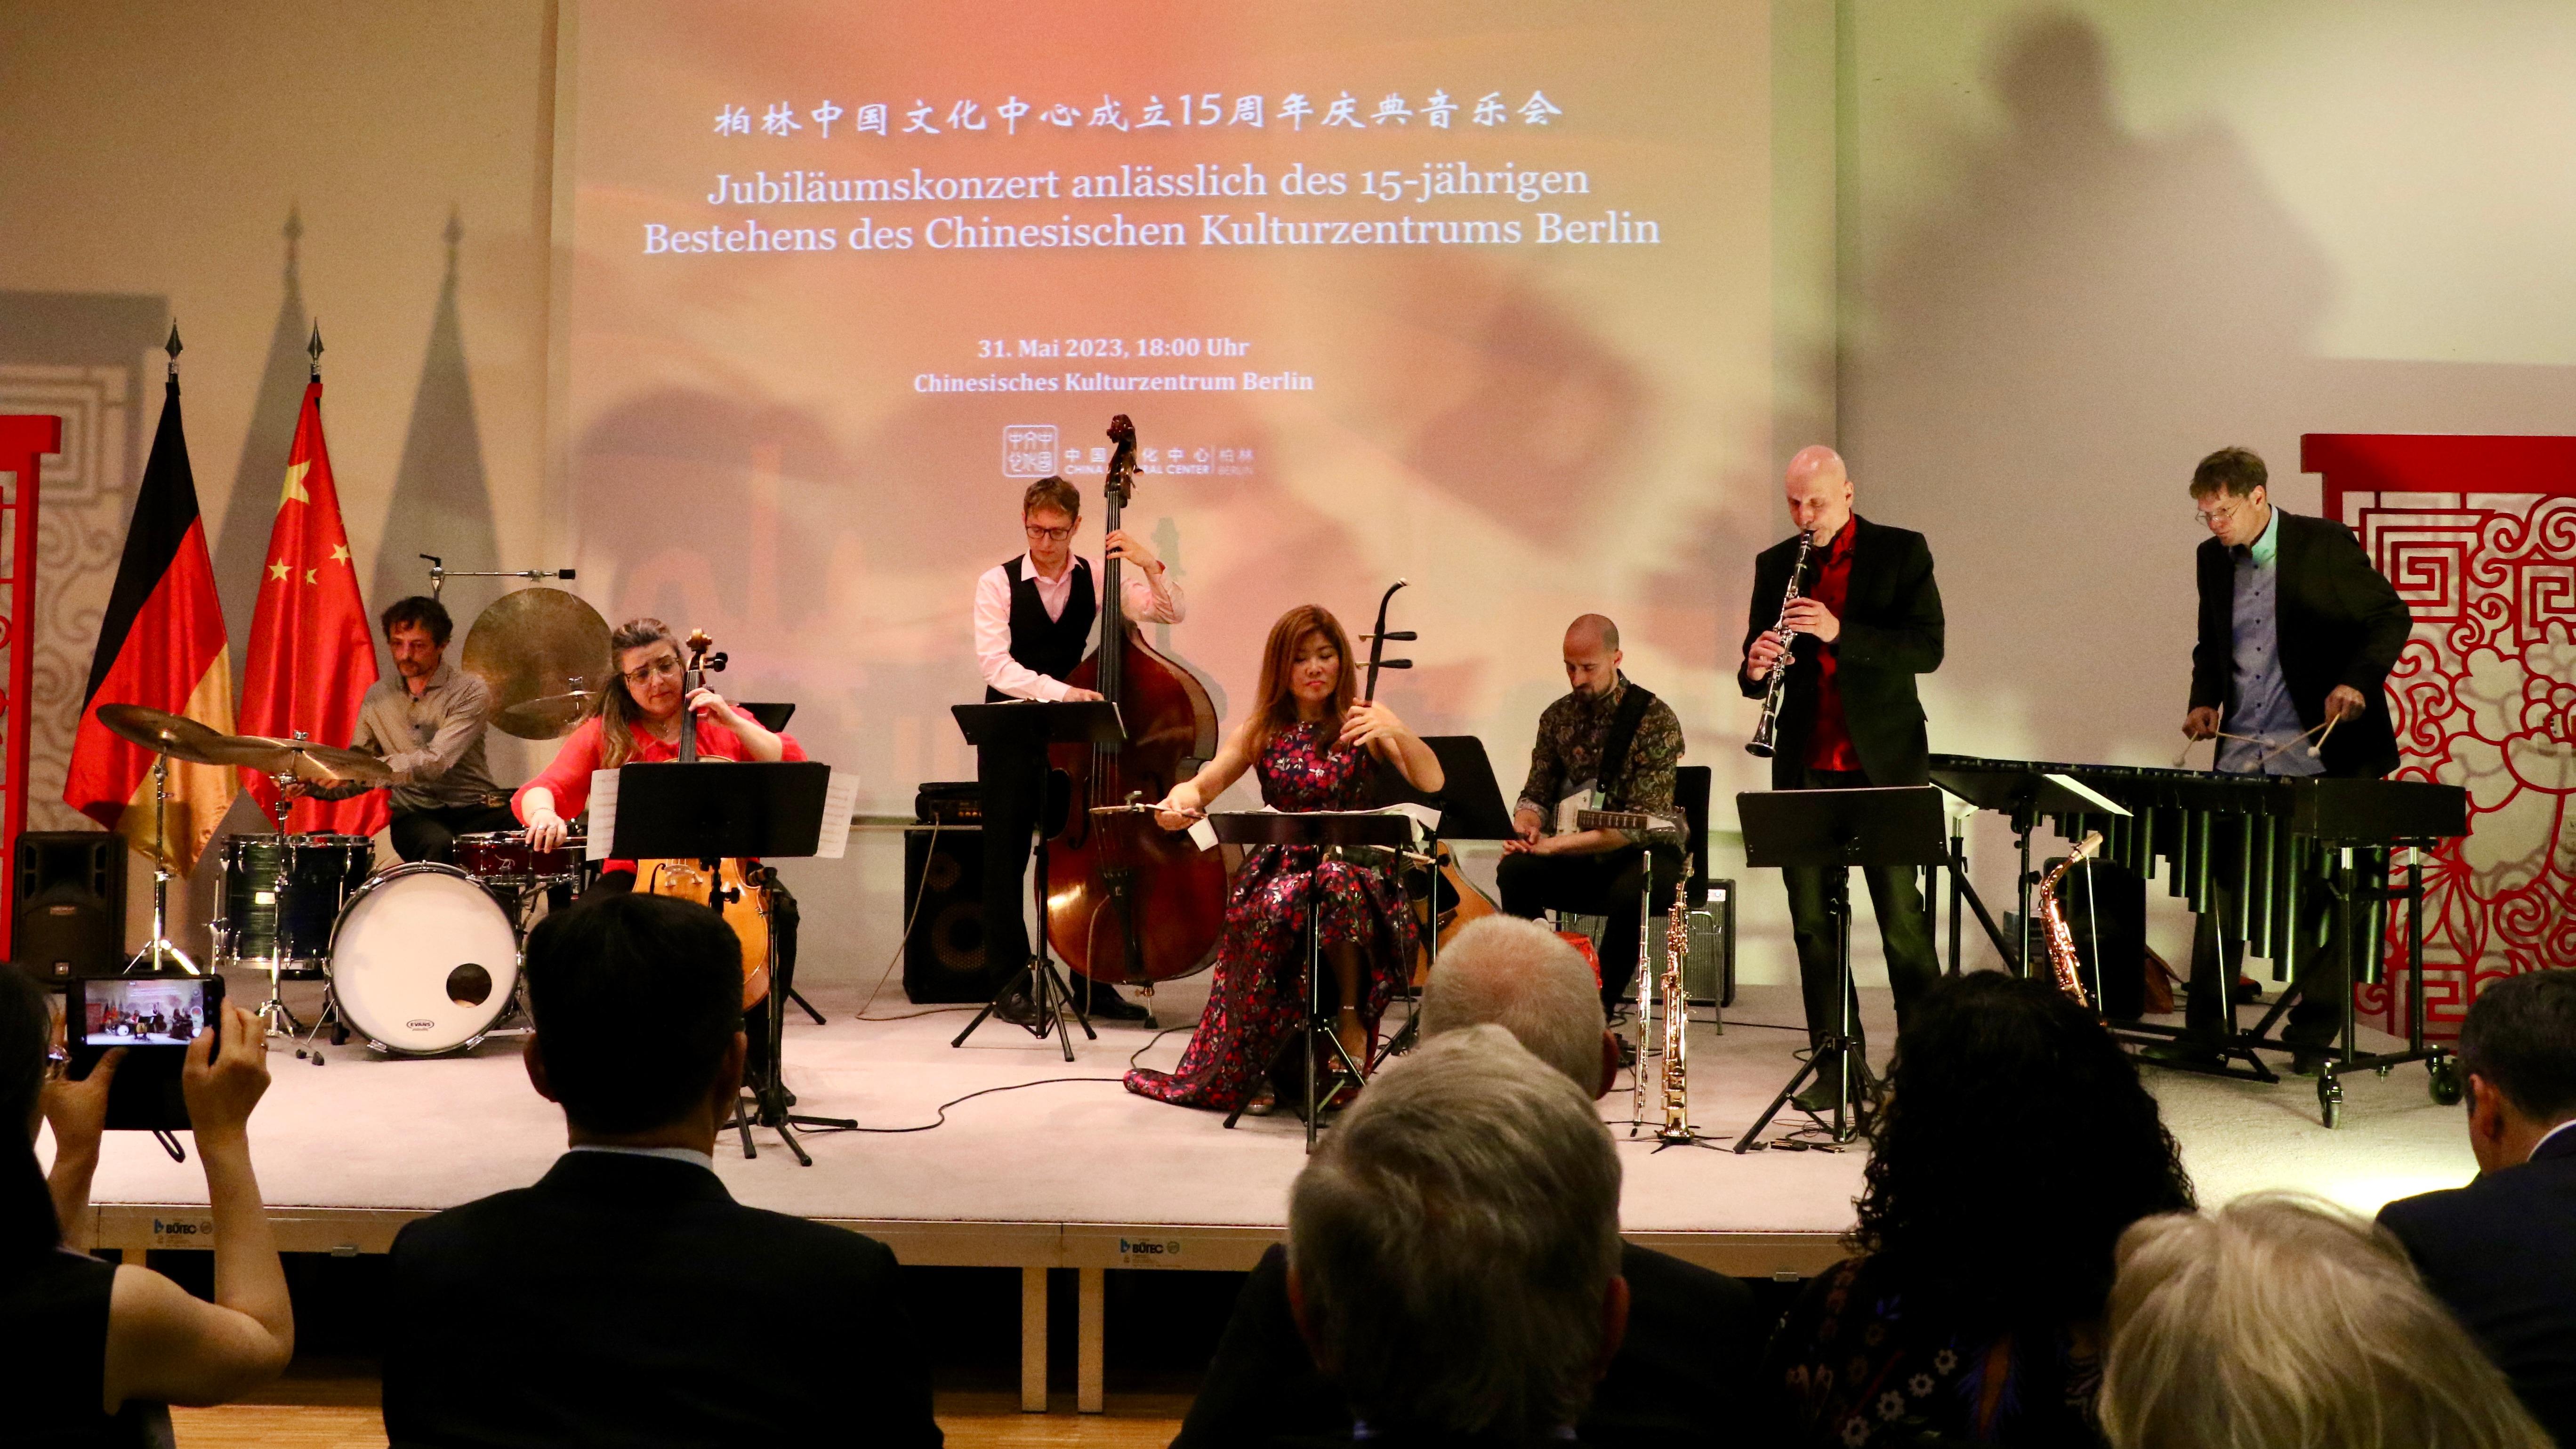 बर्लिन चिनियाँ संस्कृति केन्द्र स्थापनाको १५ औँ वार्षिकोत्सवको उपलक्ष्यमा सङ्गीत समारोह आयोजित